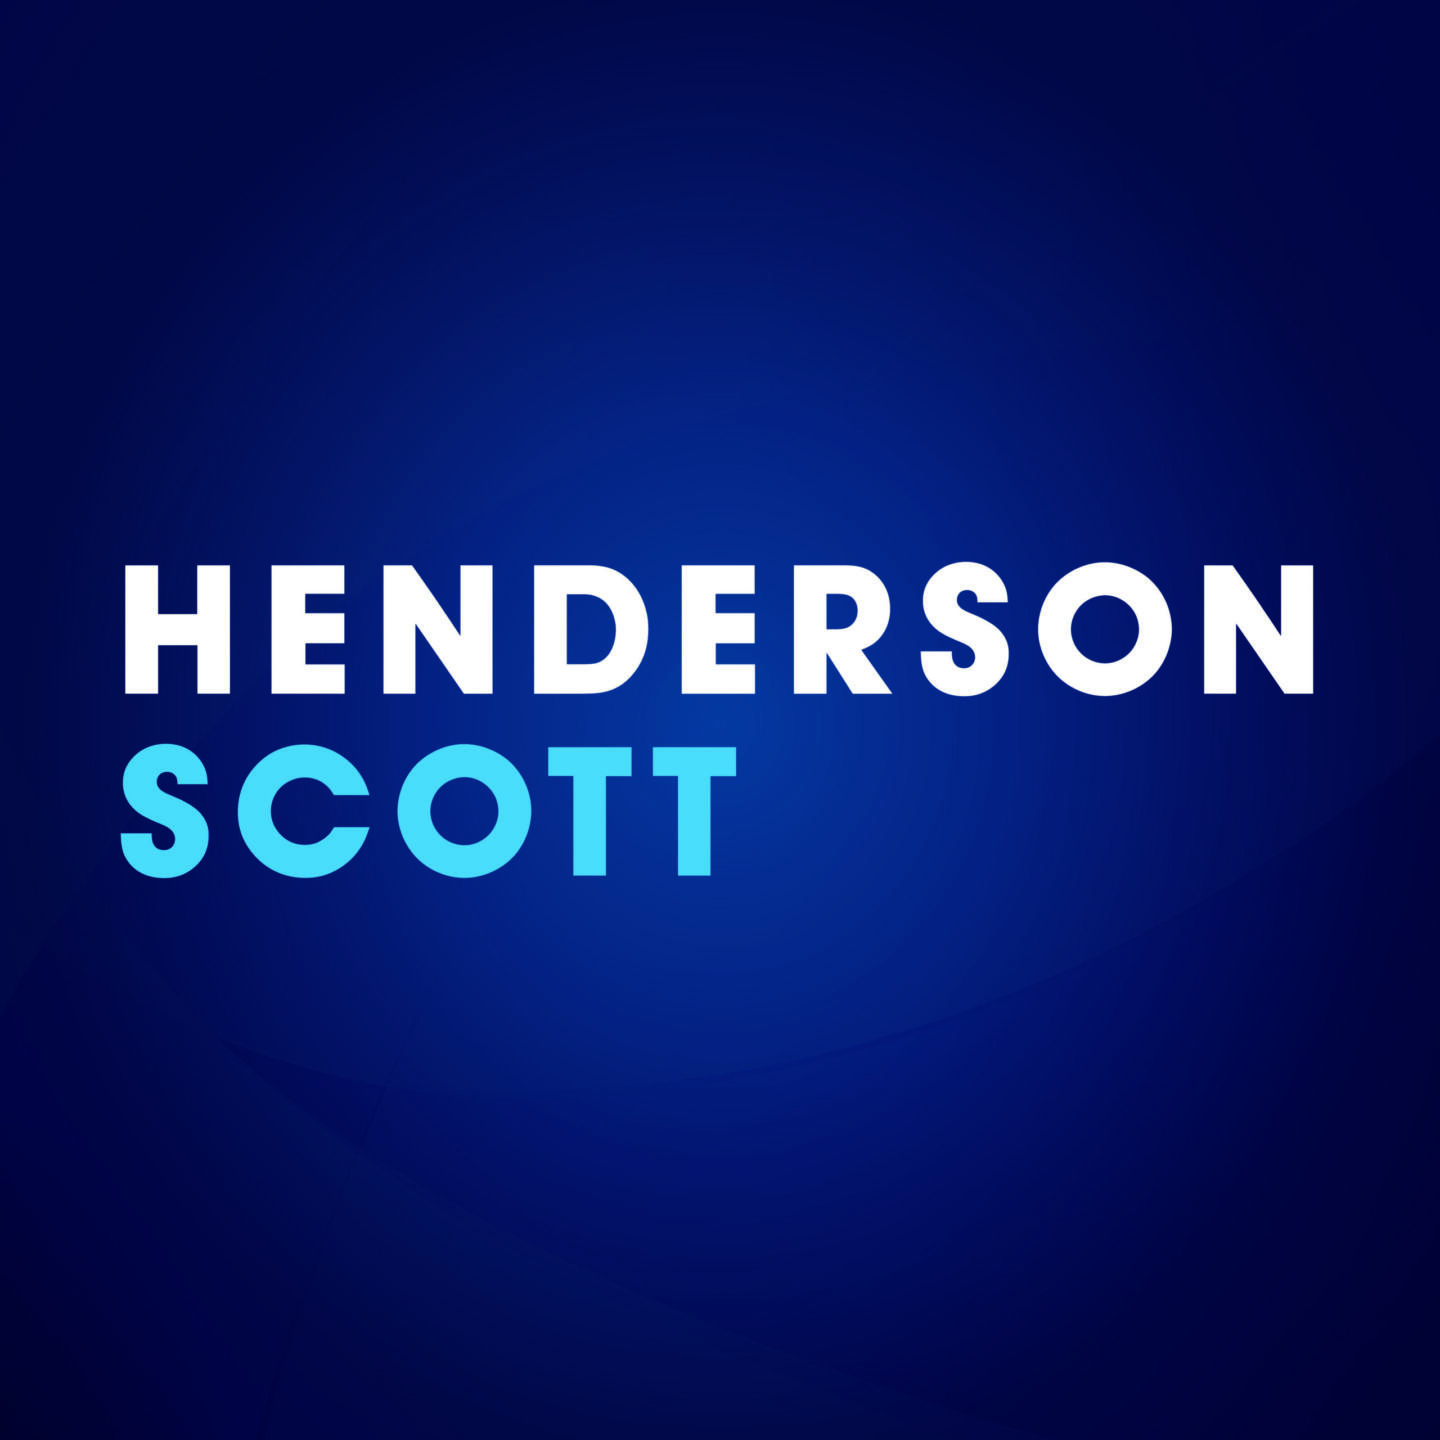 Henderson Scott logo